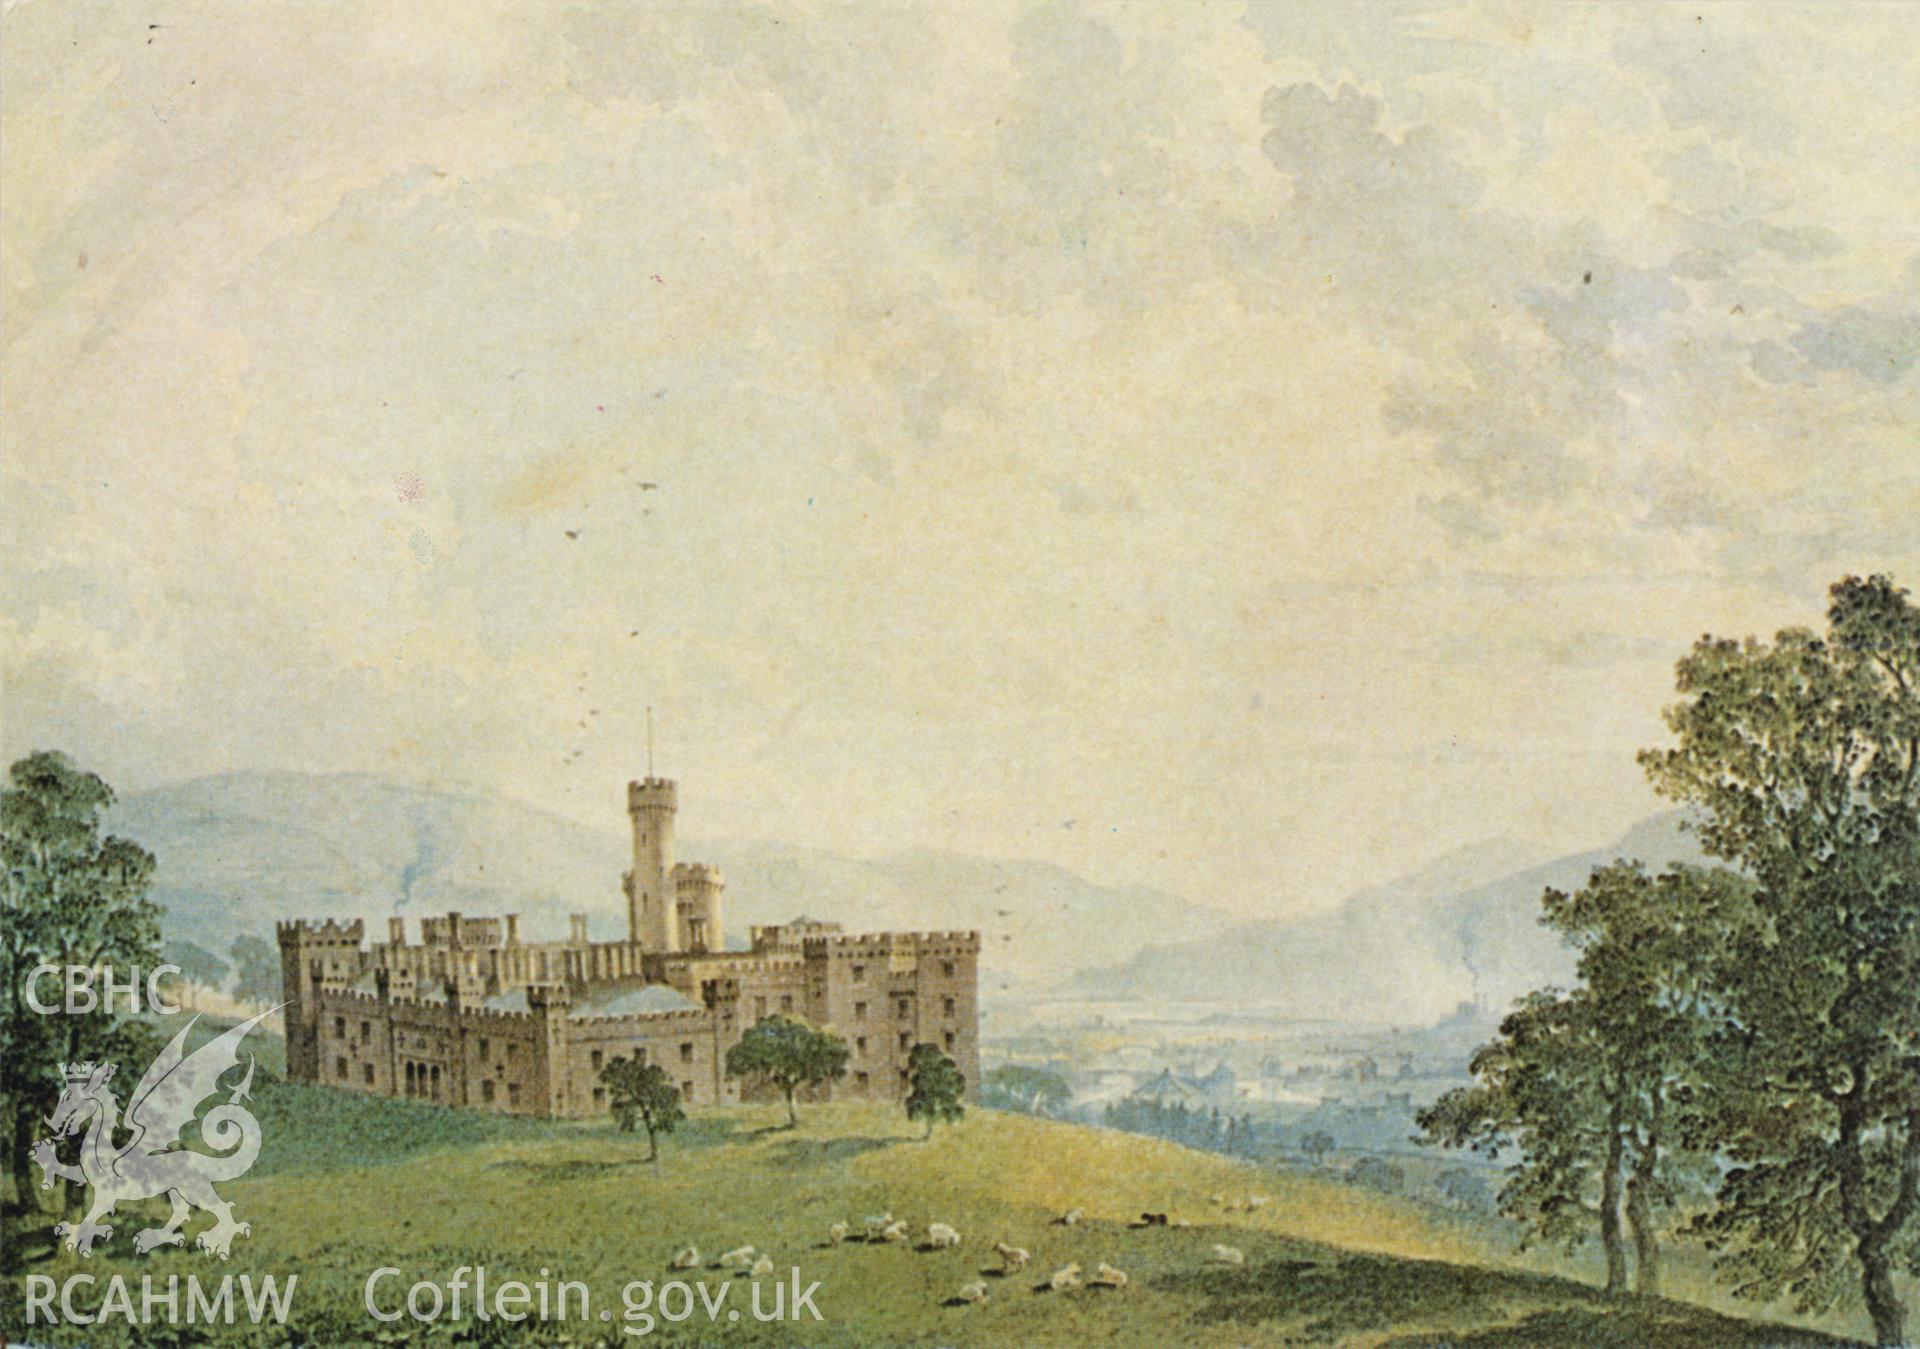 Digital copy of a post card showing landscape view of Cyfarthfa Ironworks, Merthyr Tydfil.